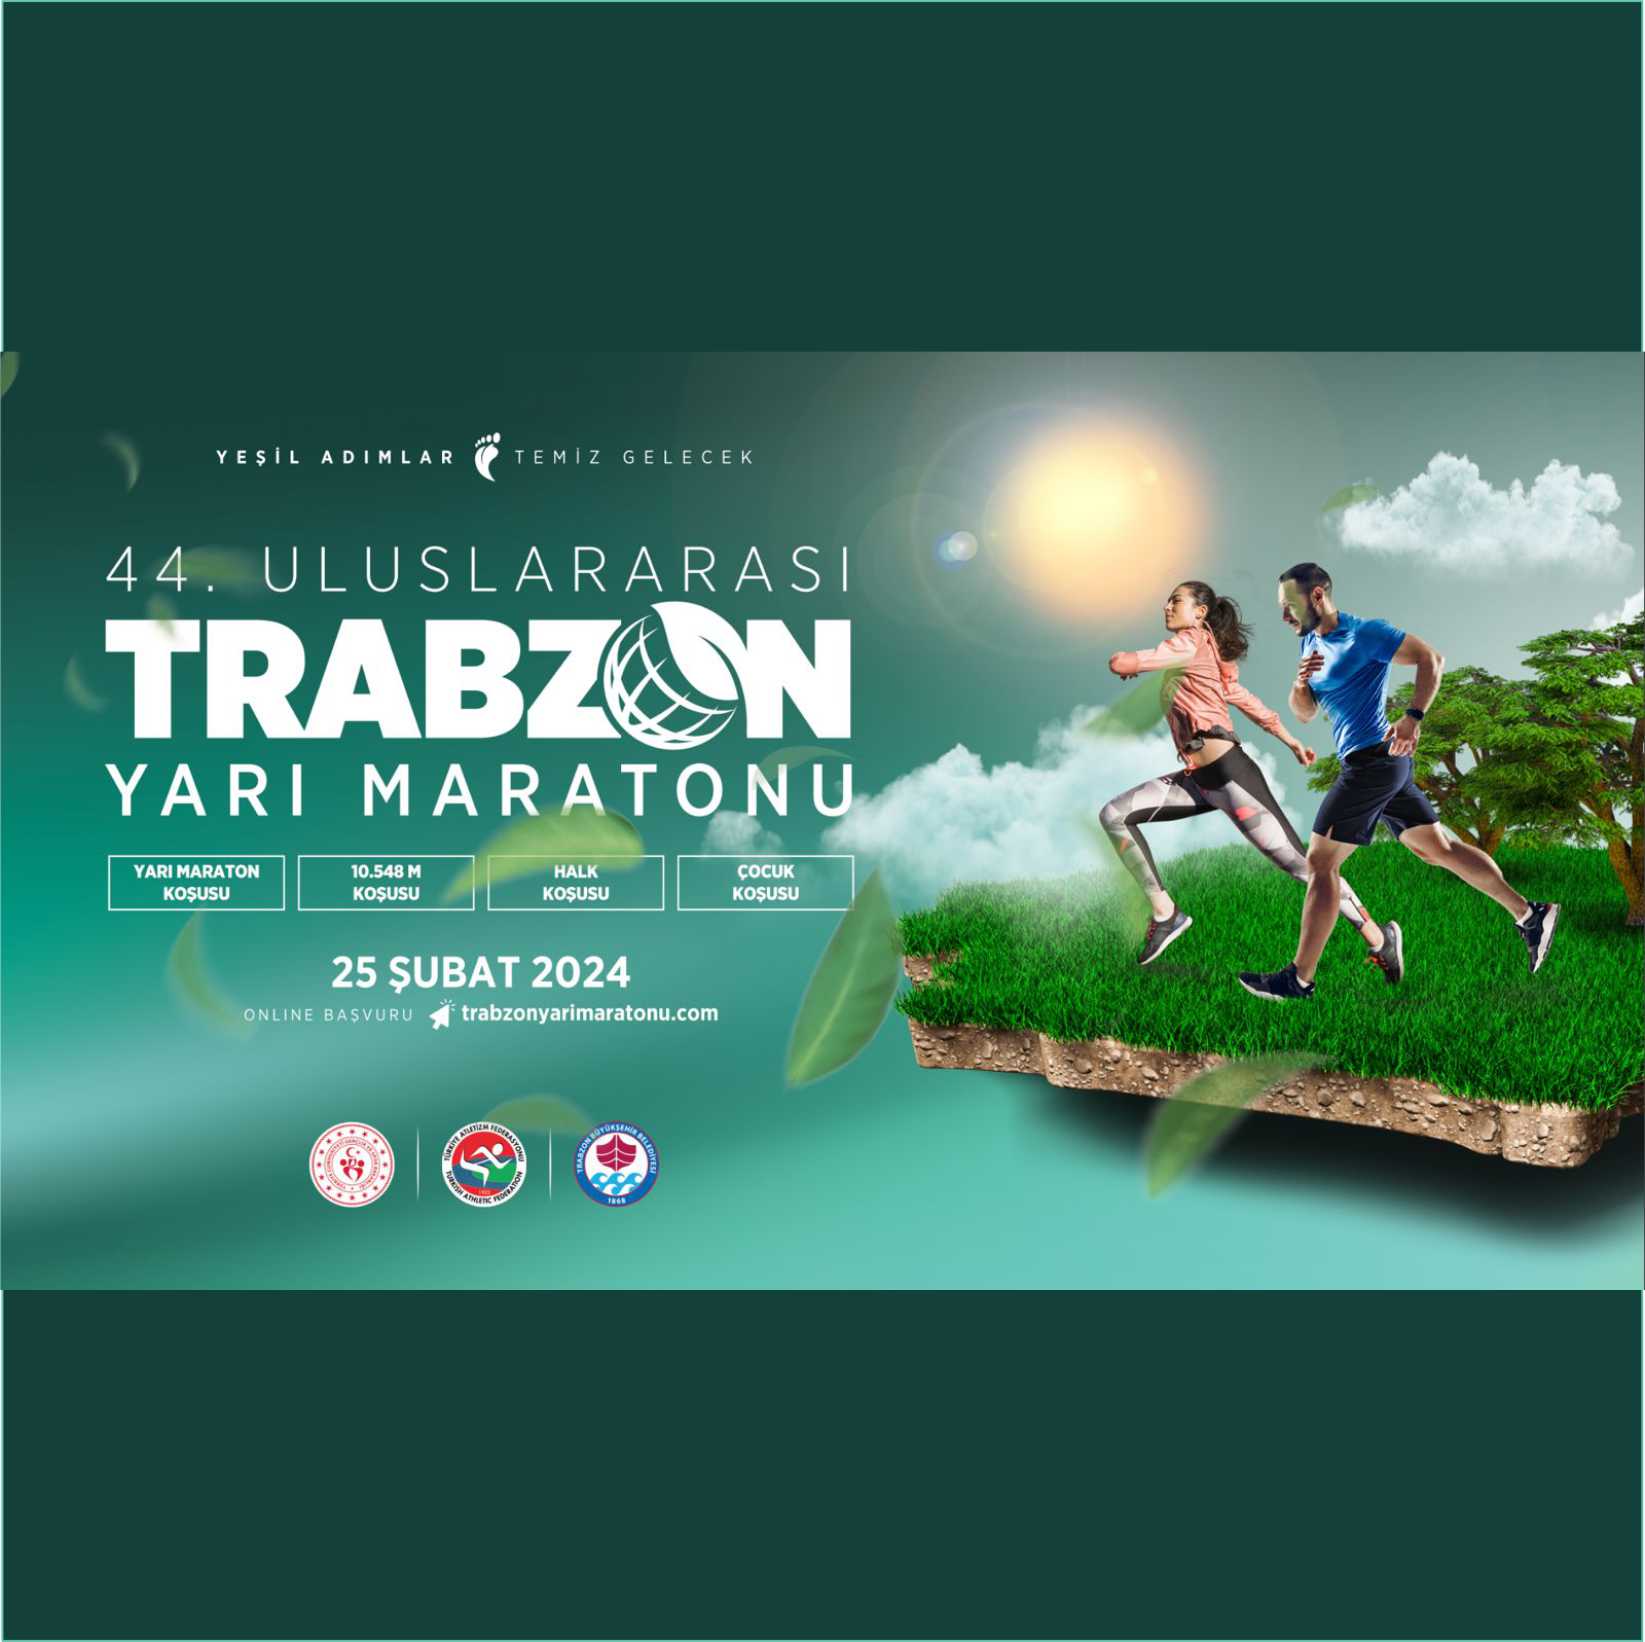 Uluslararası Trabzon Yarı Maratonu 25 Şubat 2024'te Koşulacak